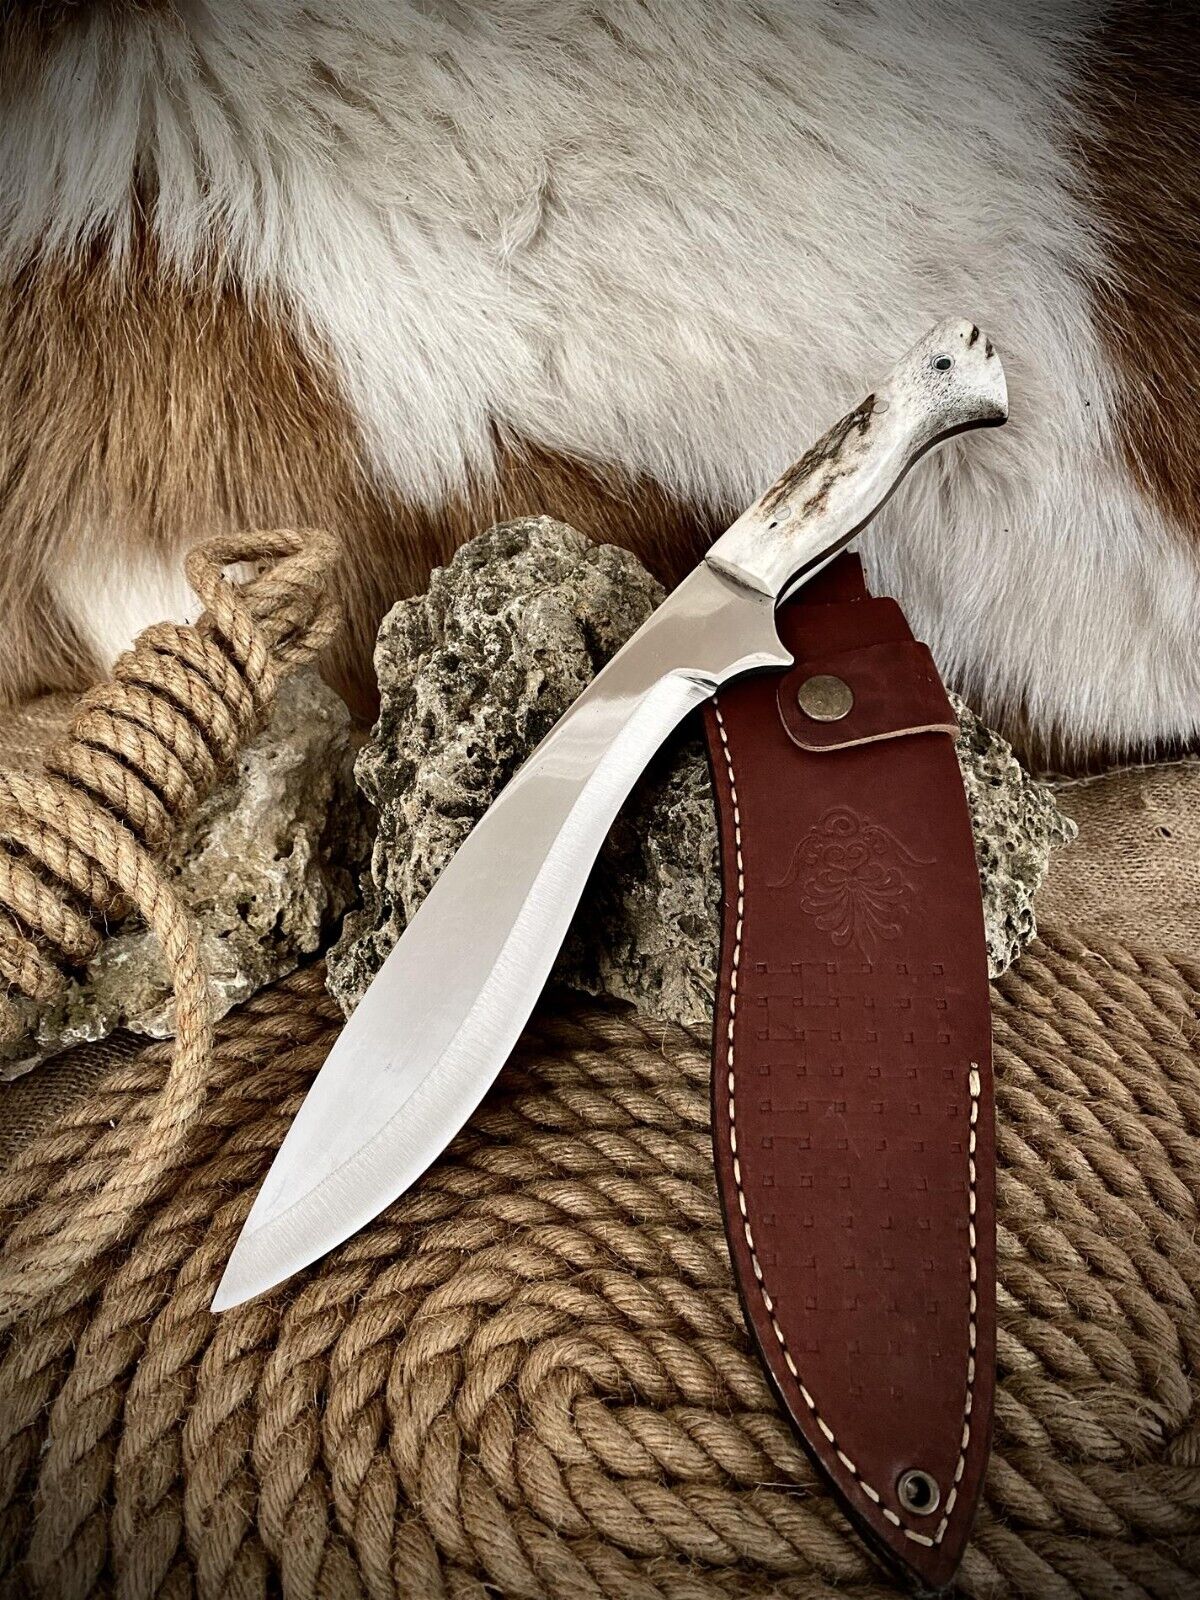 Handmade Large Camper Hunting Knife,Bushcraft knife,fishing knife,deer antler